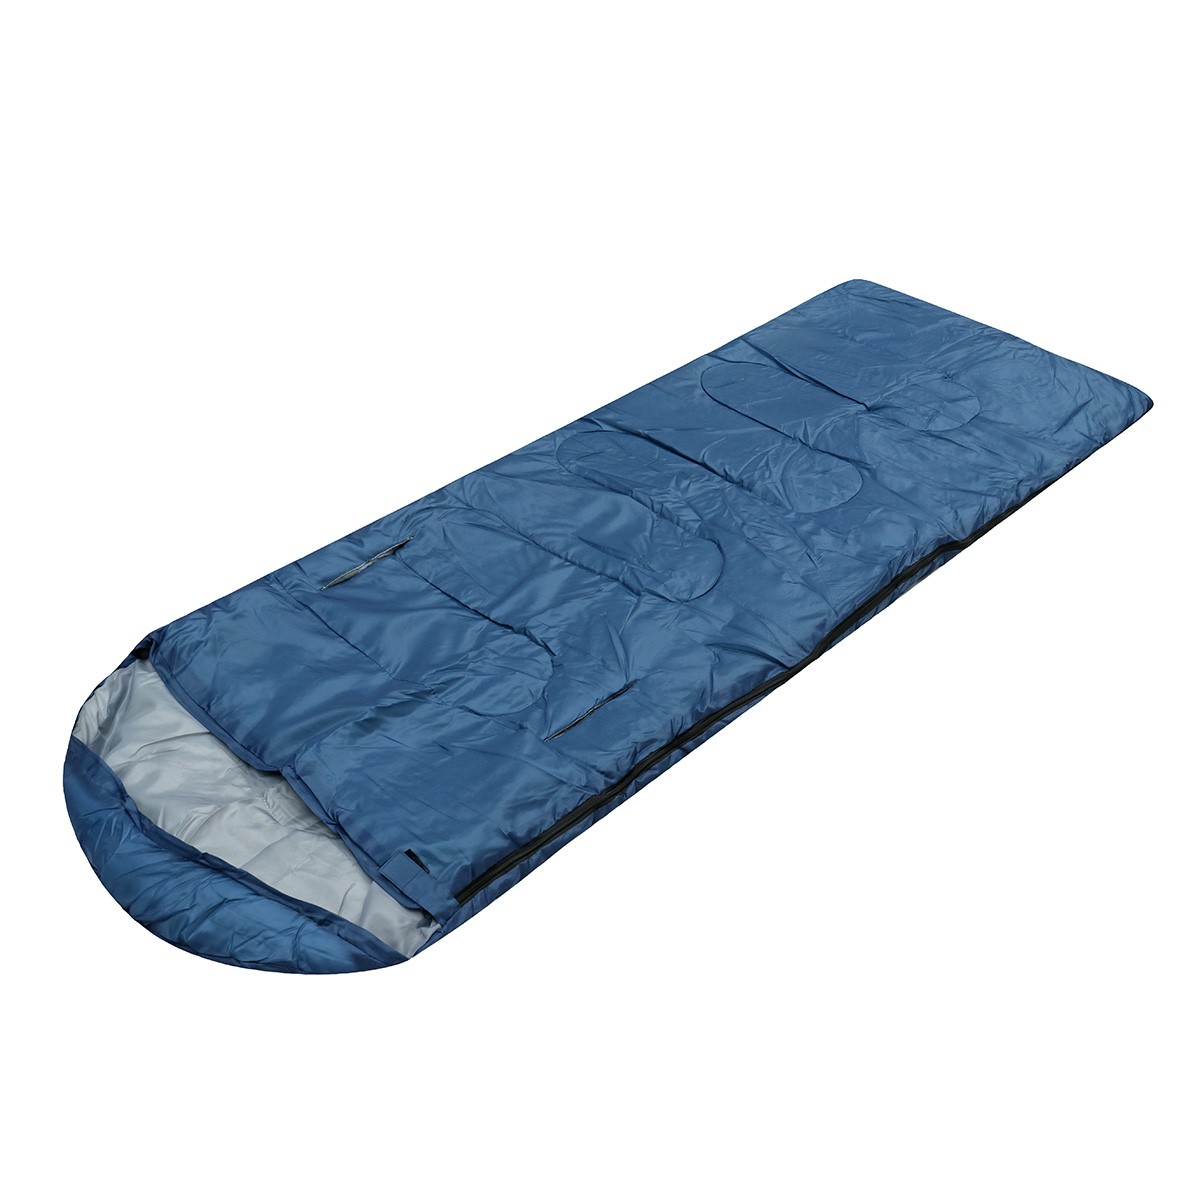 10x75CM-Waterproof-Camping-Envelope-Sleeping-Bag-Outdoor-Hiking-Backpacking-Sleeping-Bag-with-Compre-1647670-2